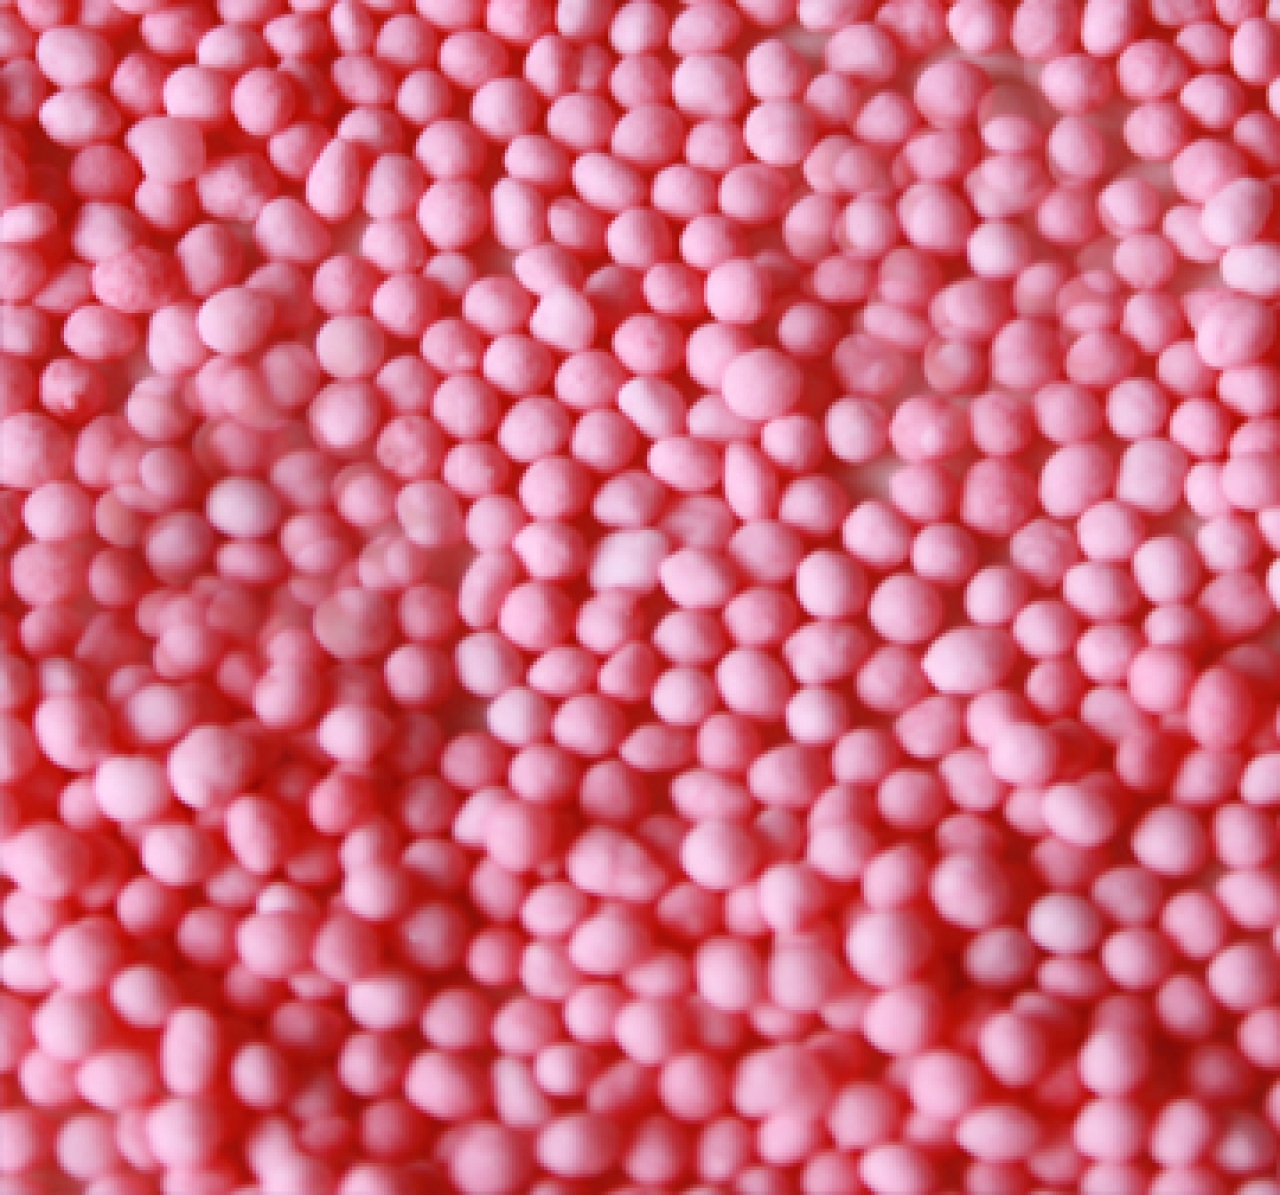 GH - Zuckerperlen / Nonpareilles, 1,5 mm, rosa, 75 g